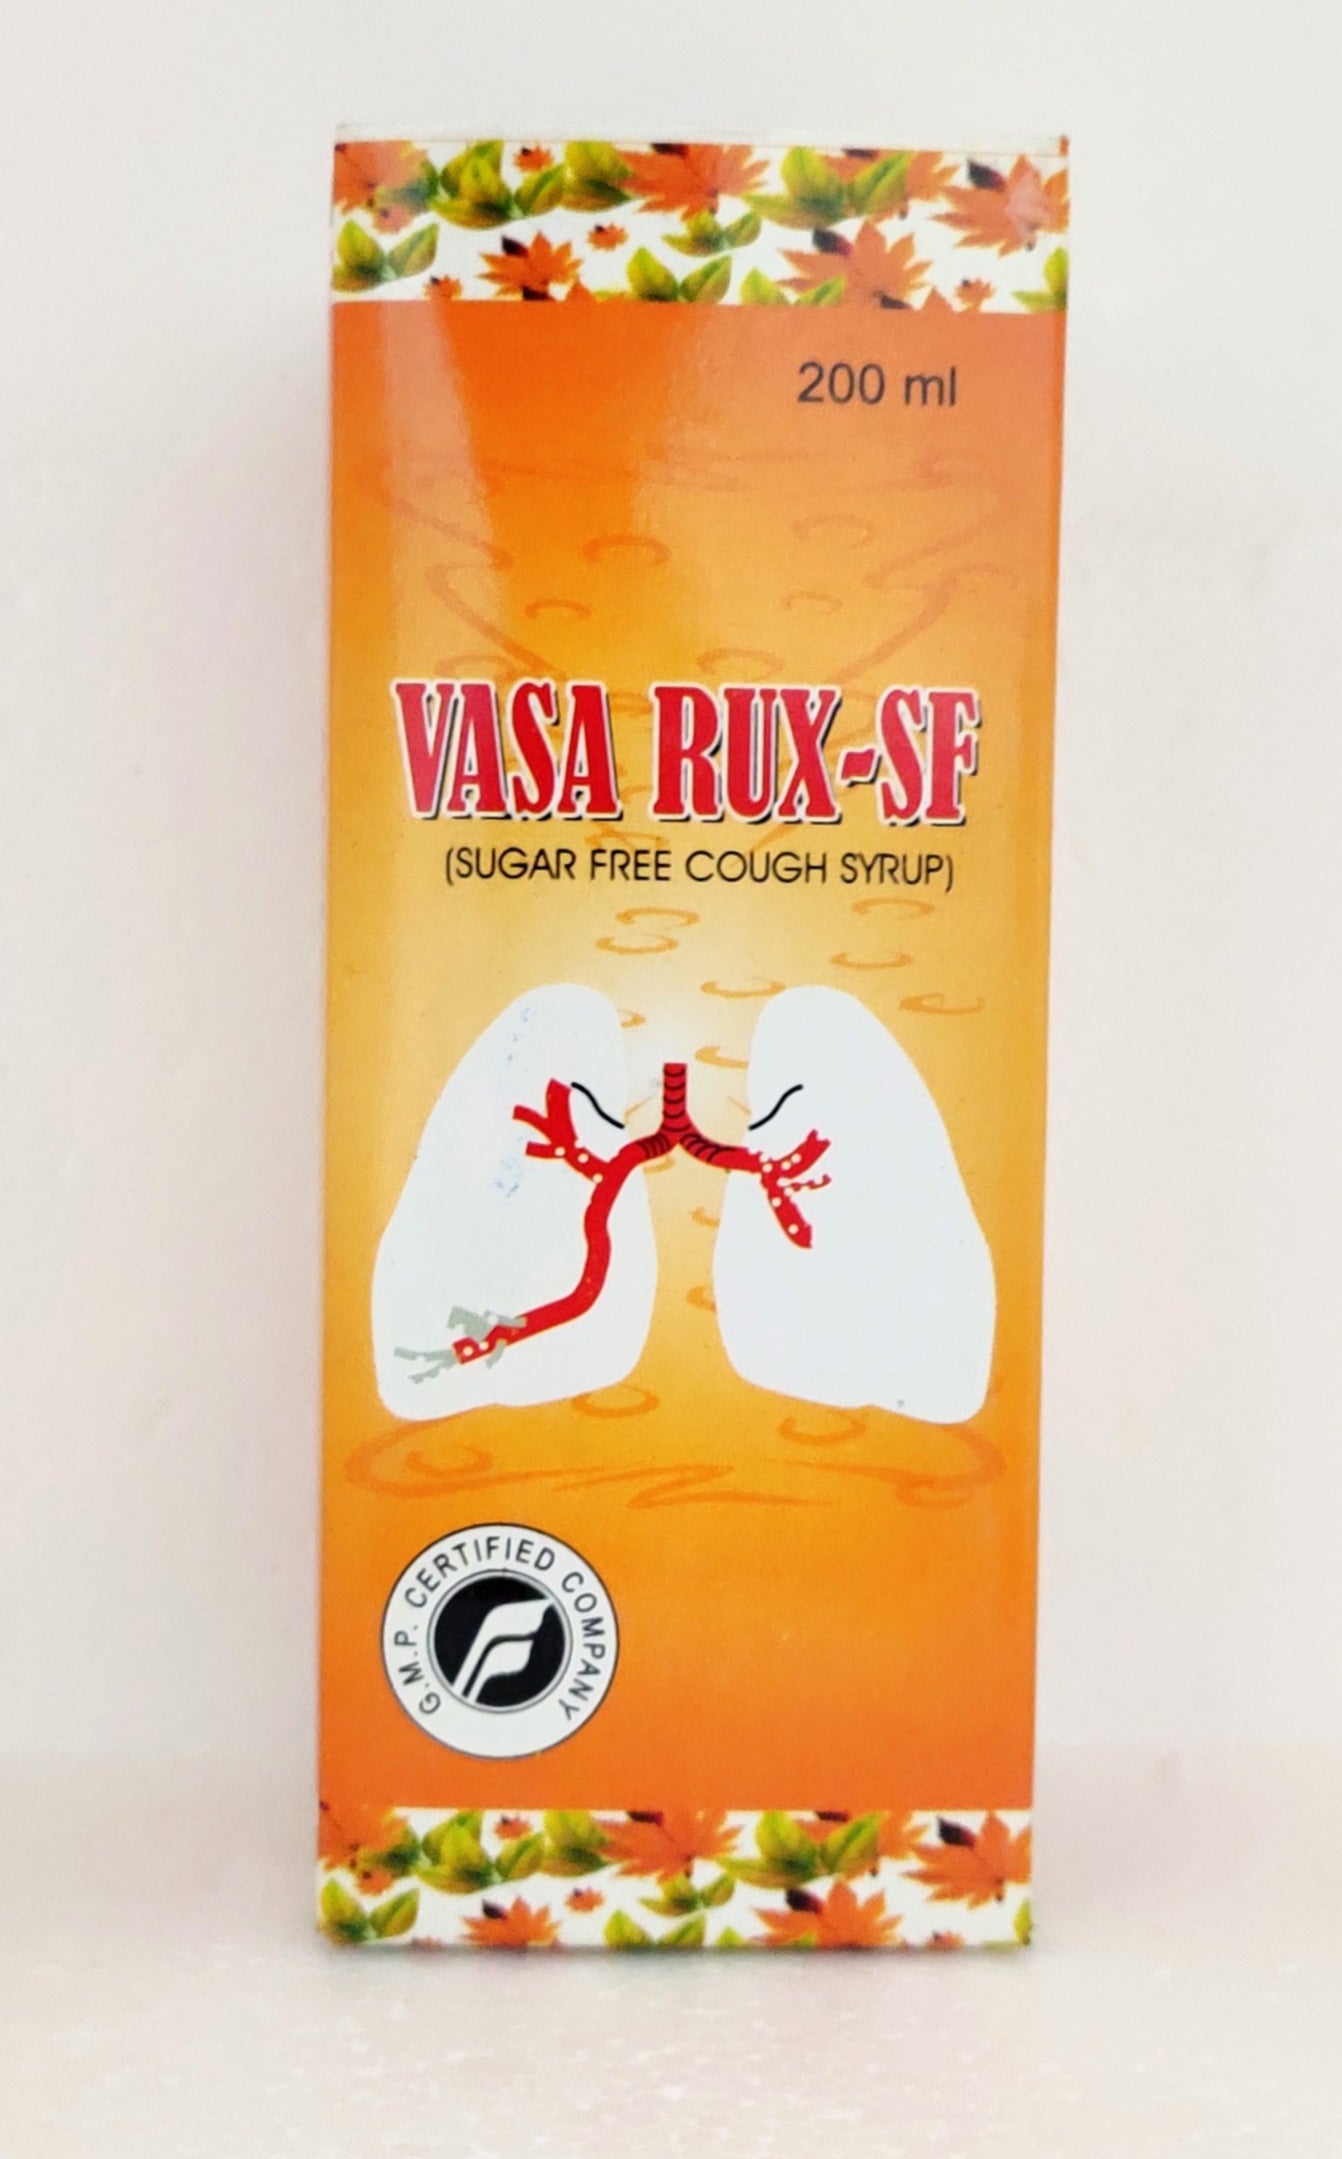 Vasa rux sf syrup 200ml -  Fort Herbal Drugs - Medizzo.com